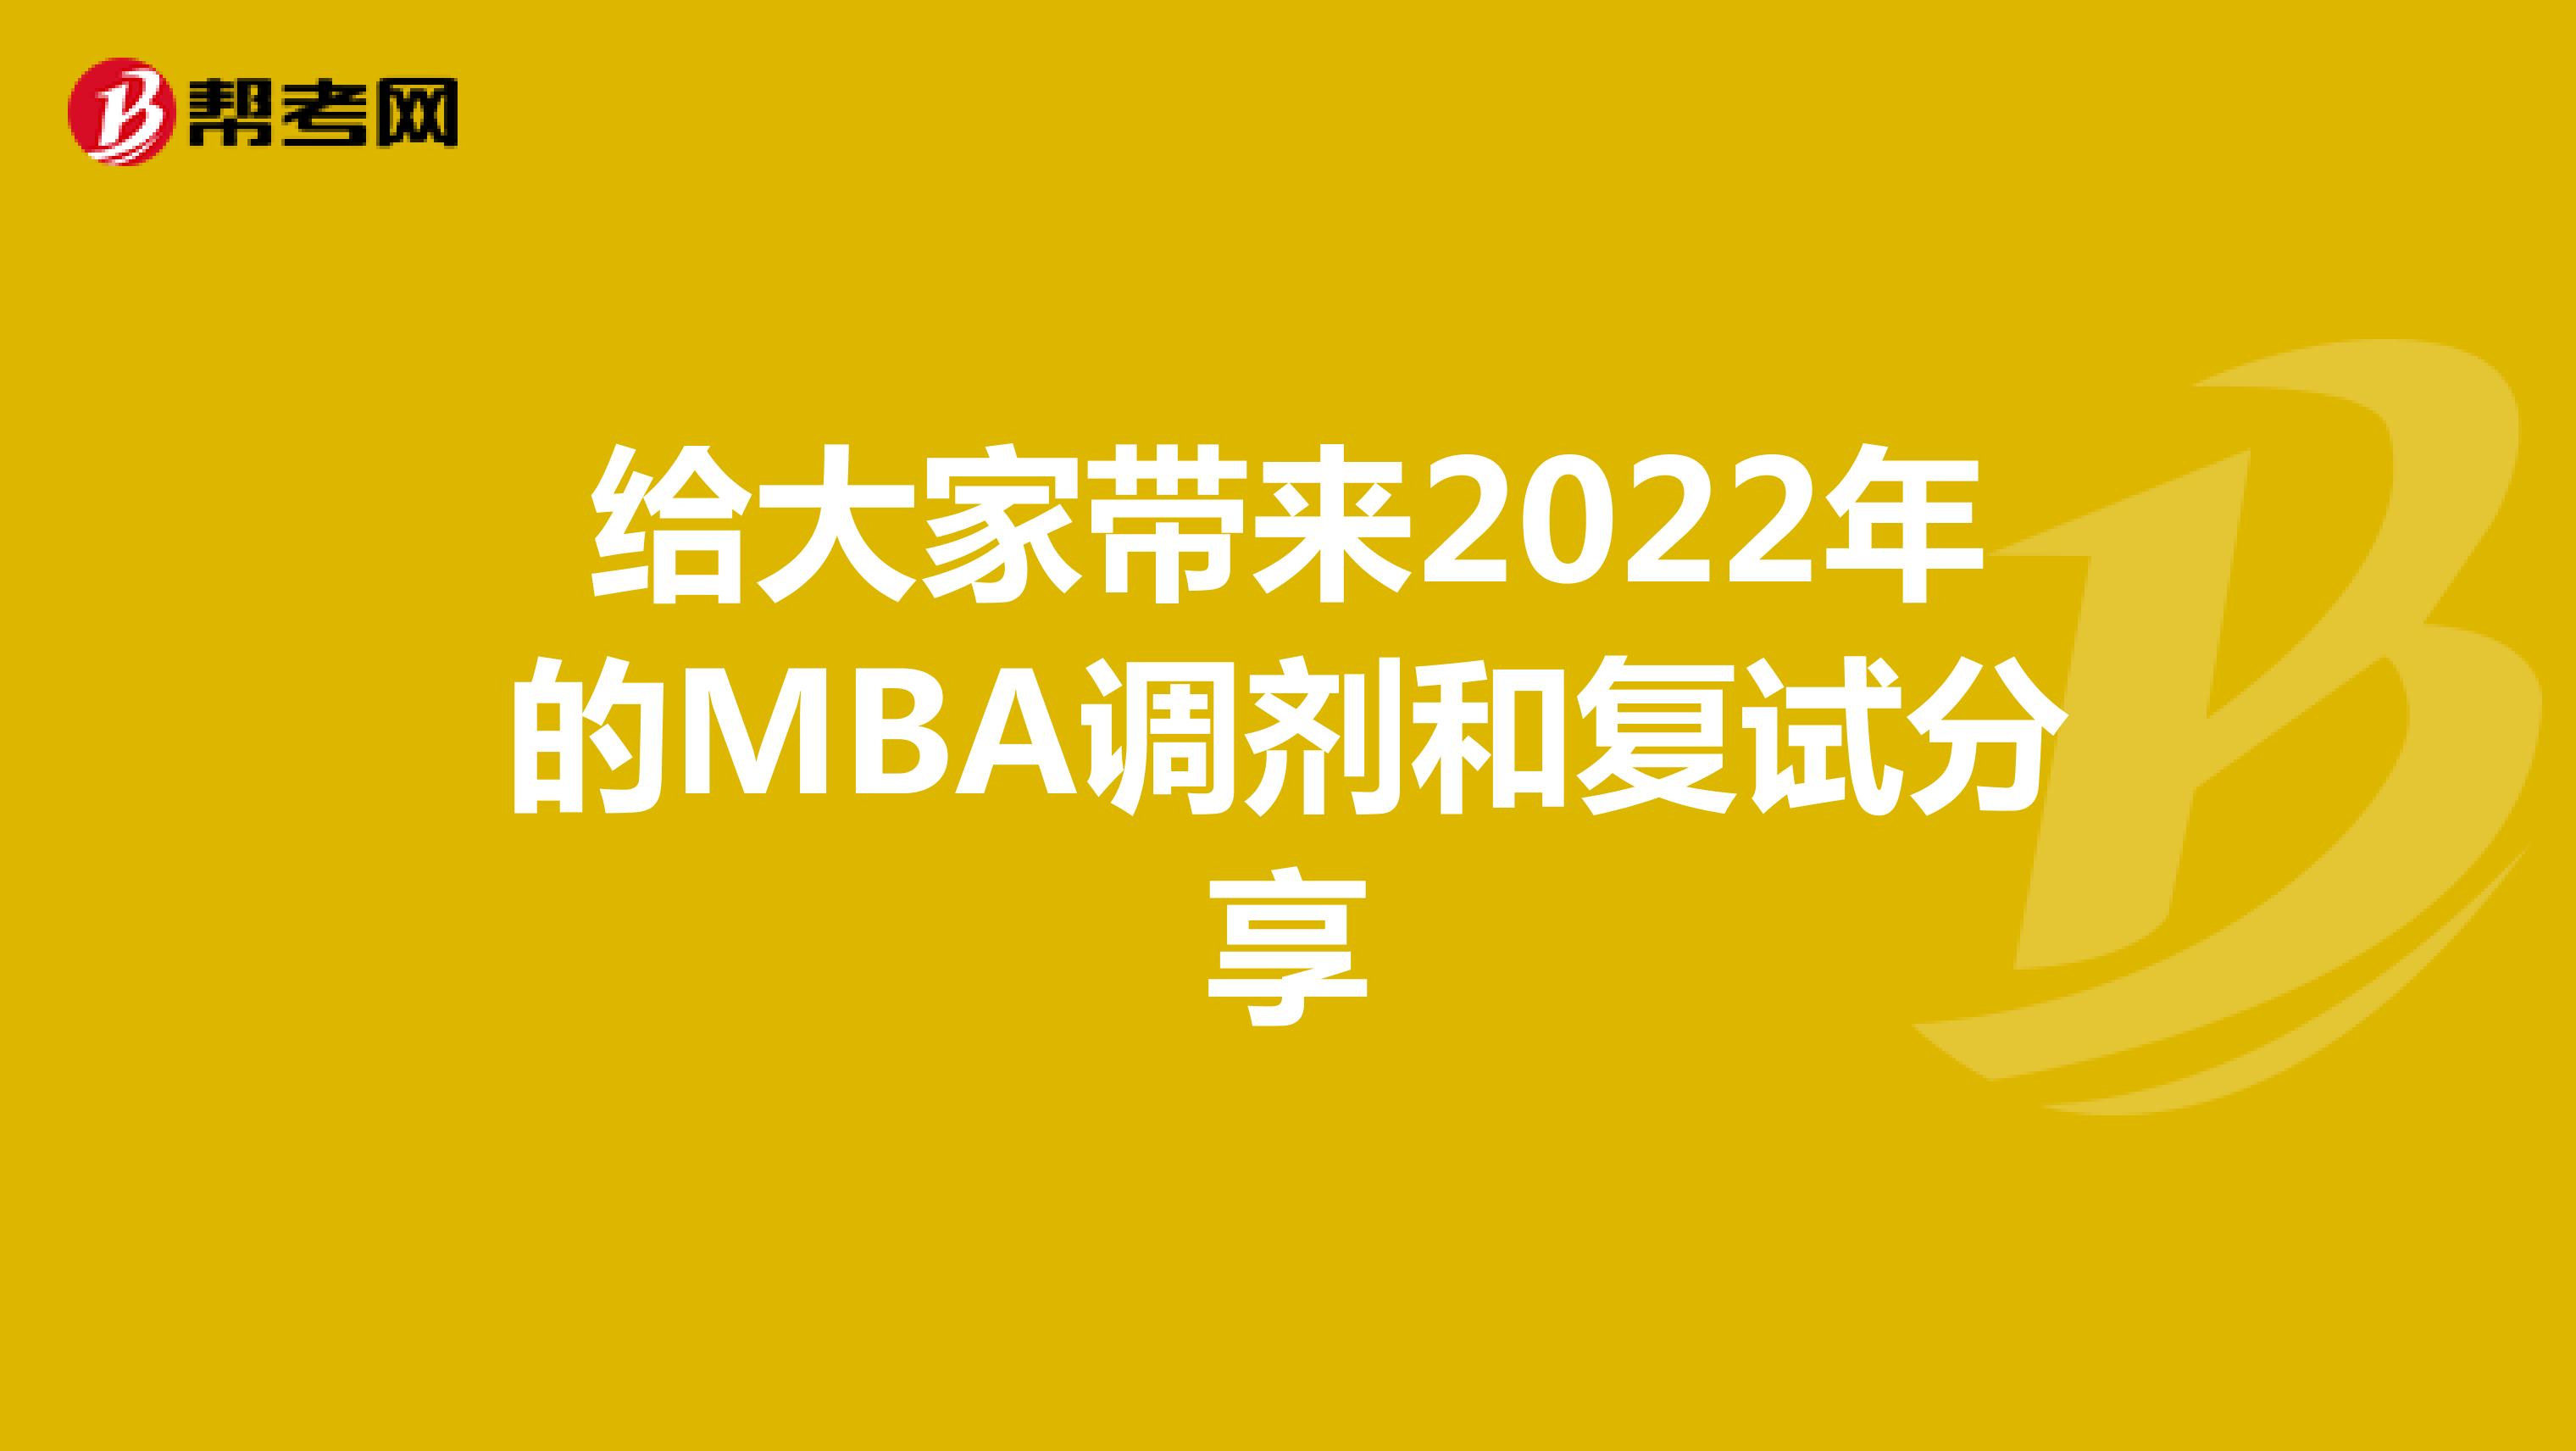 给大家带来2022年的MBA调剂和复试分享